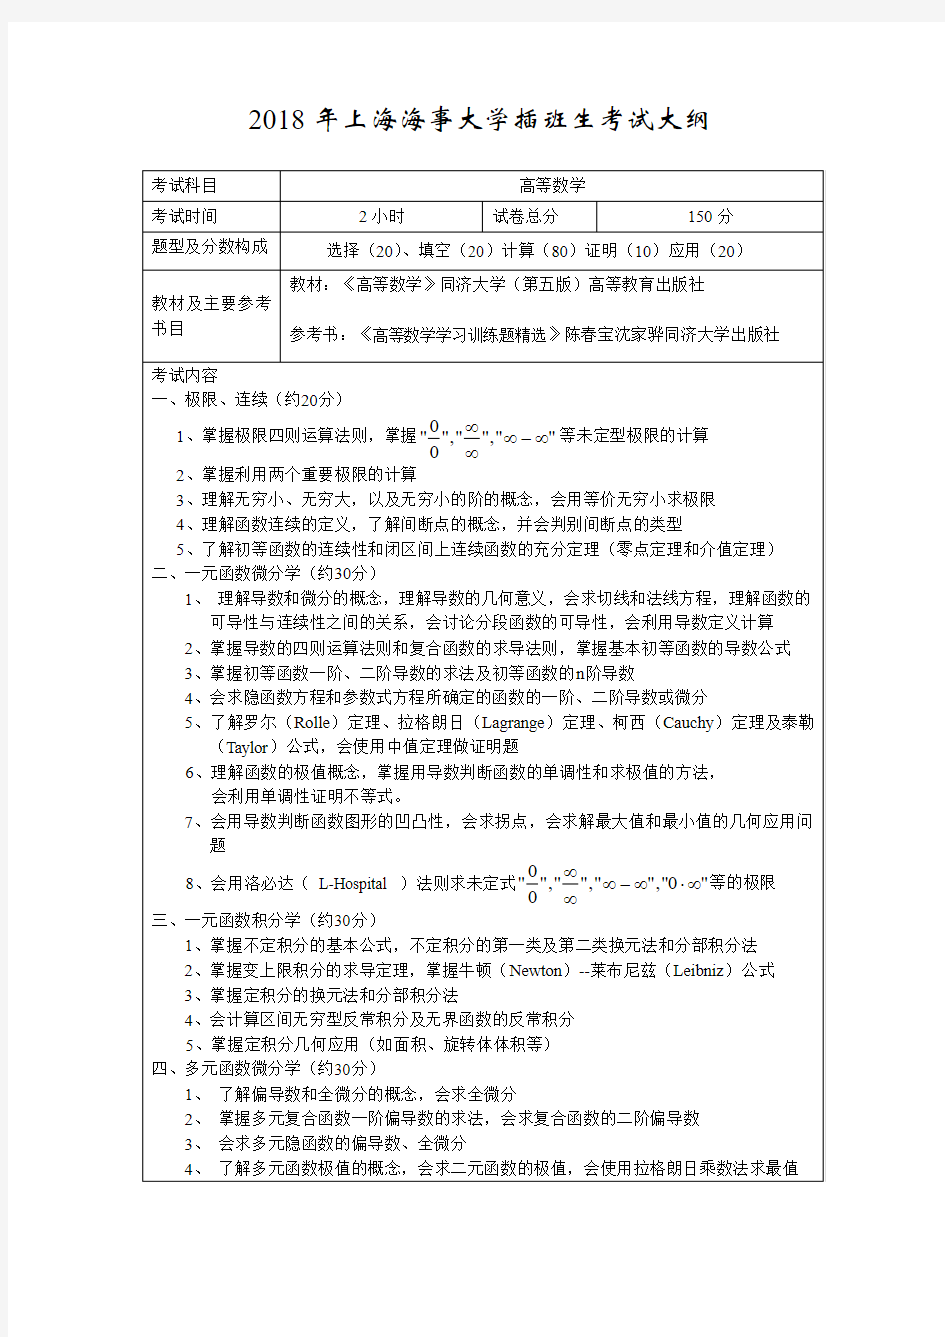 上海海事大学插班生考试大纲